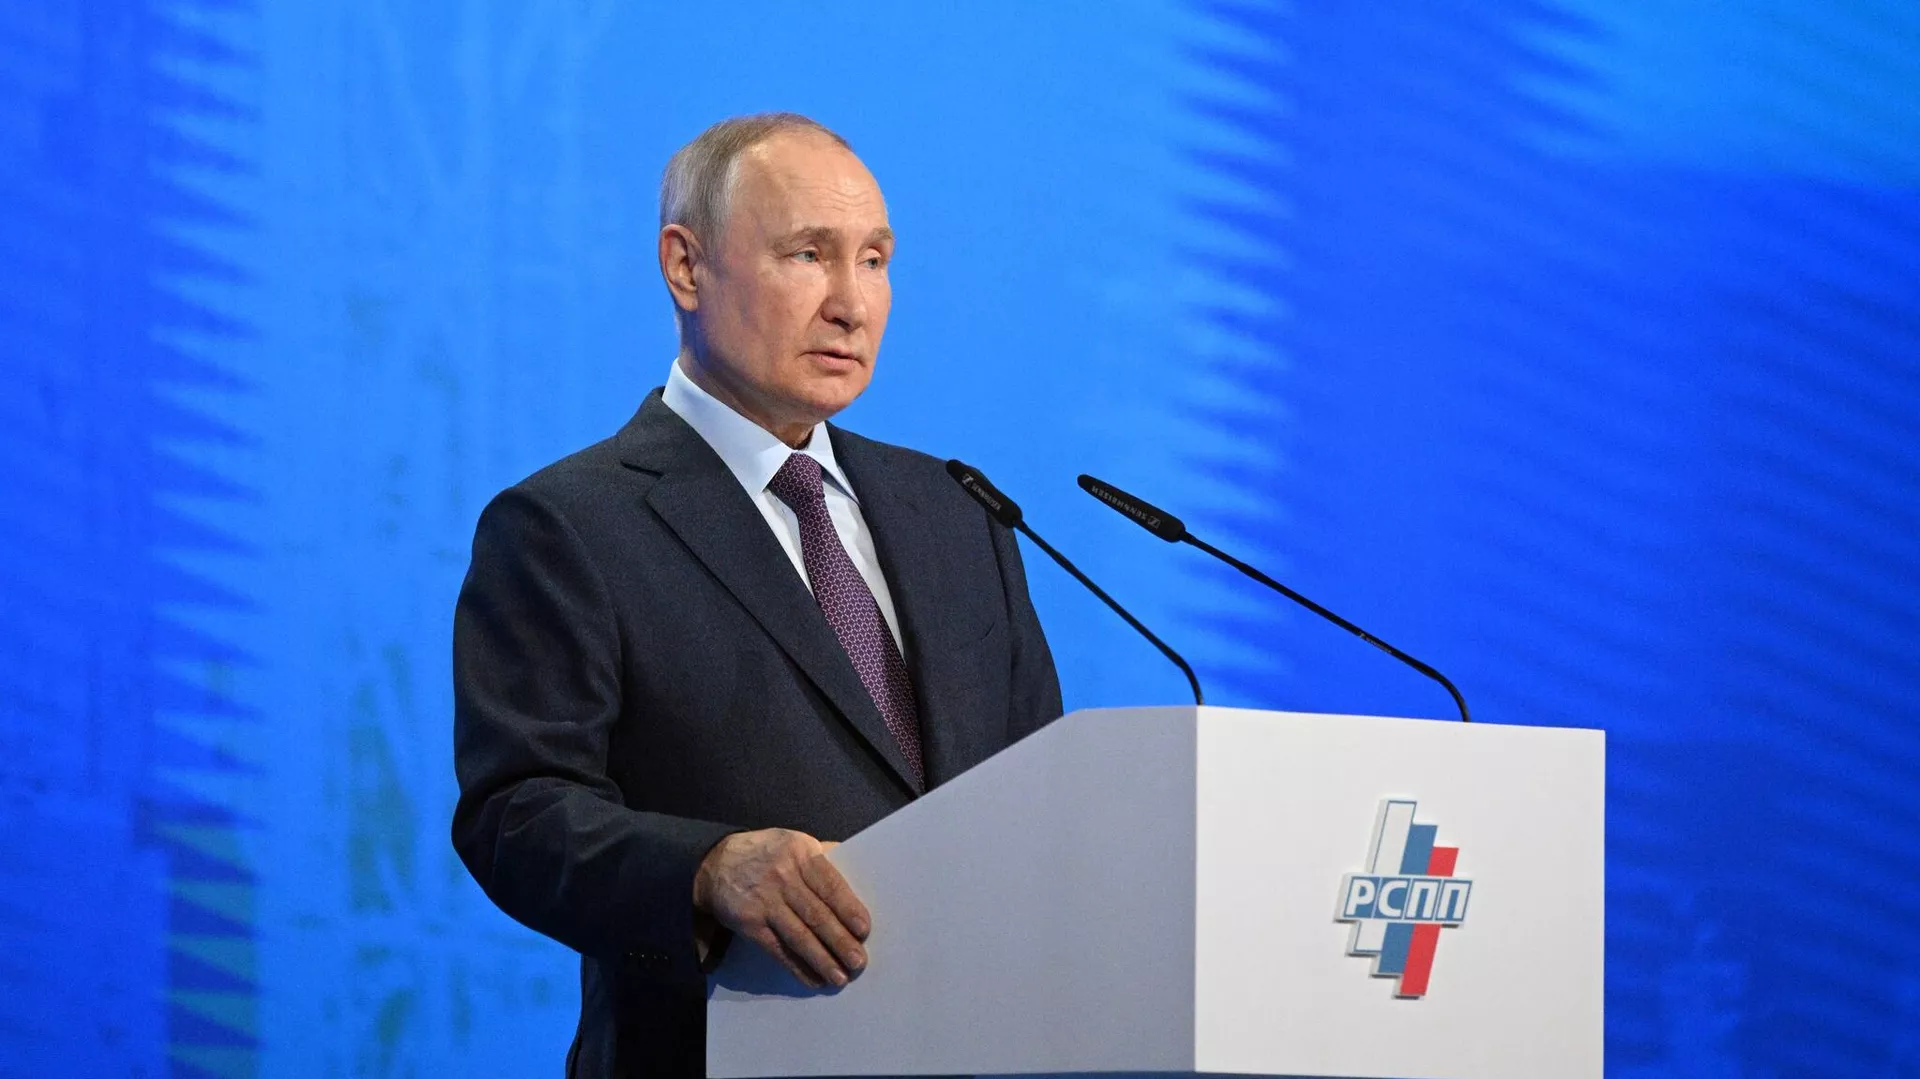 О развитии экономики и поддержке бизнеса. Путин выступил на съезде РСПП